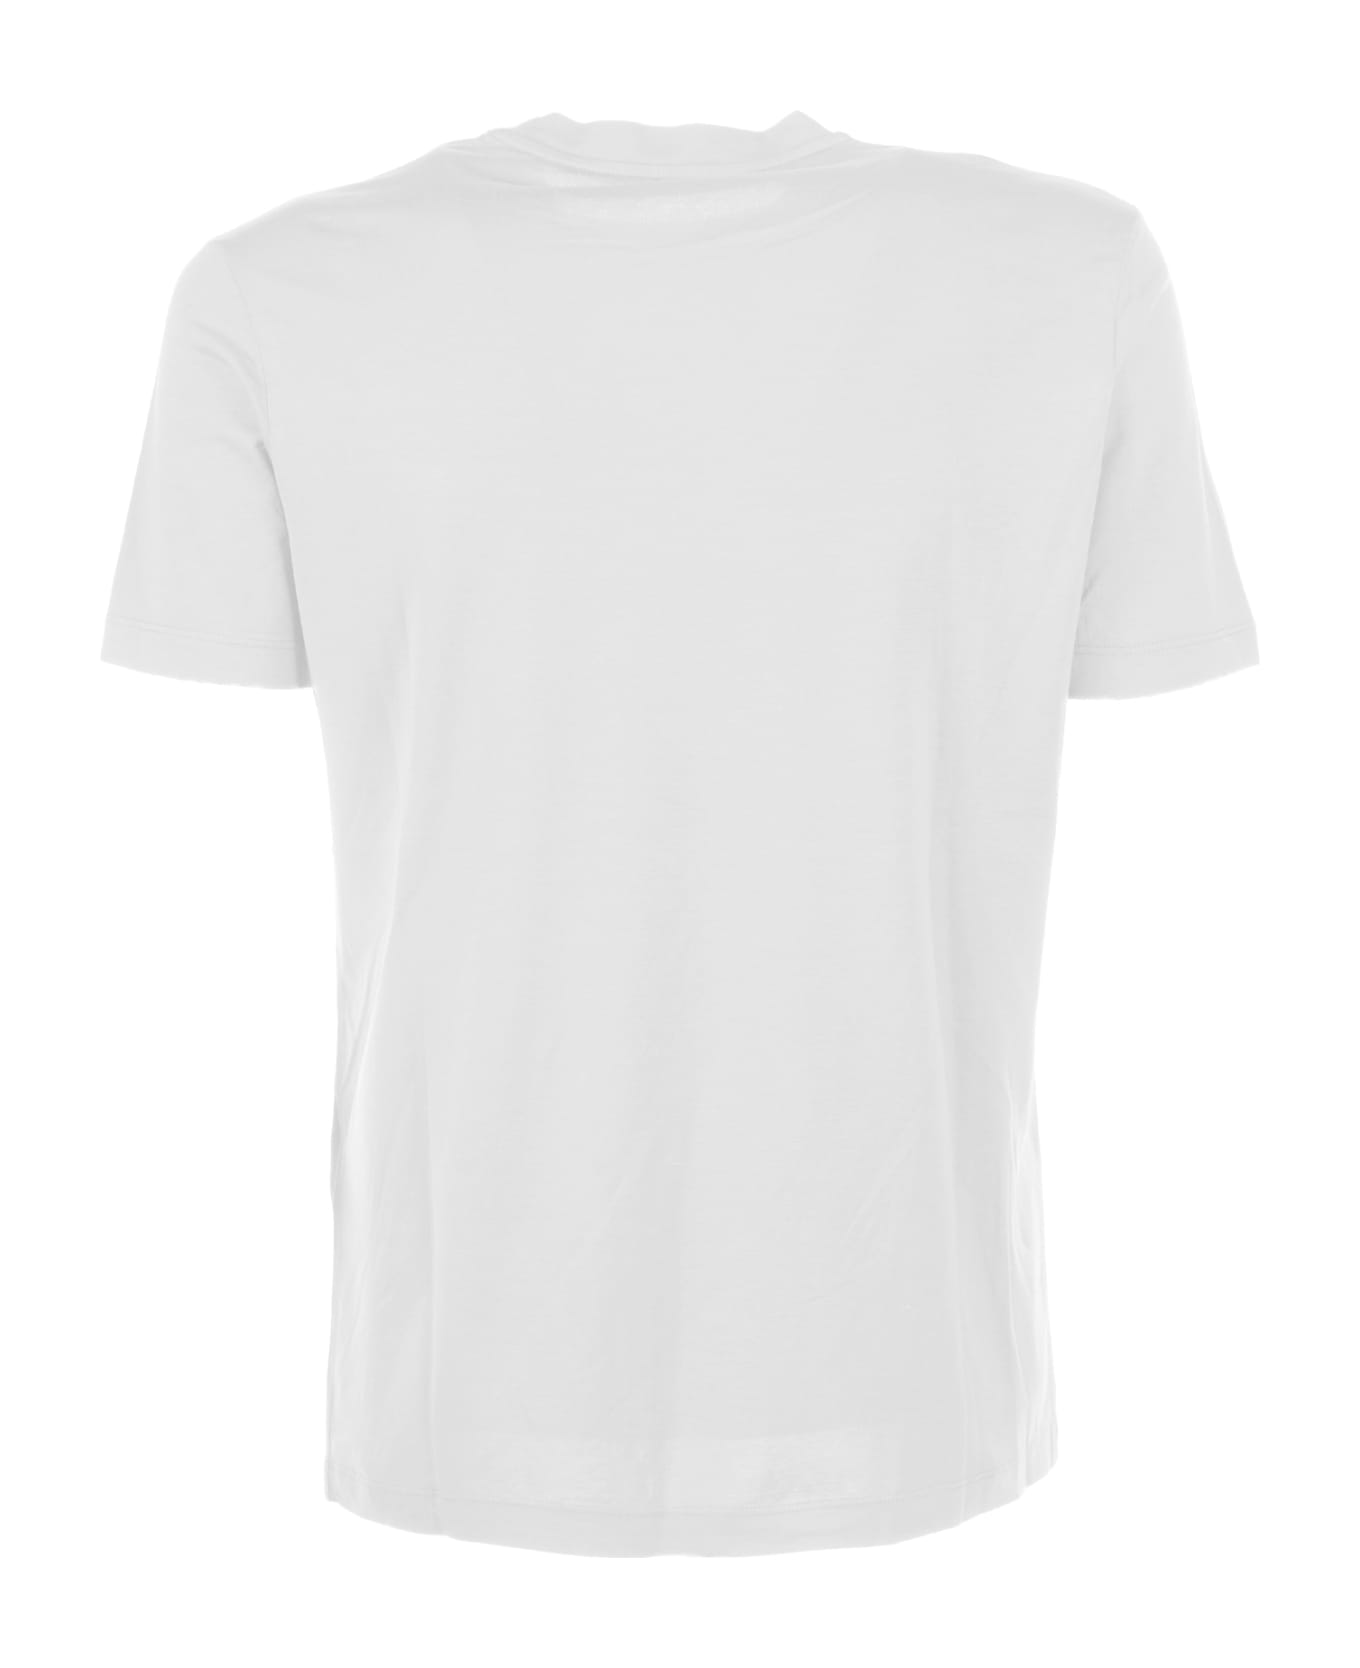 Altea White Cotton T-shirt - BIANCO OTTICO シャツ